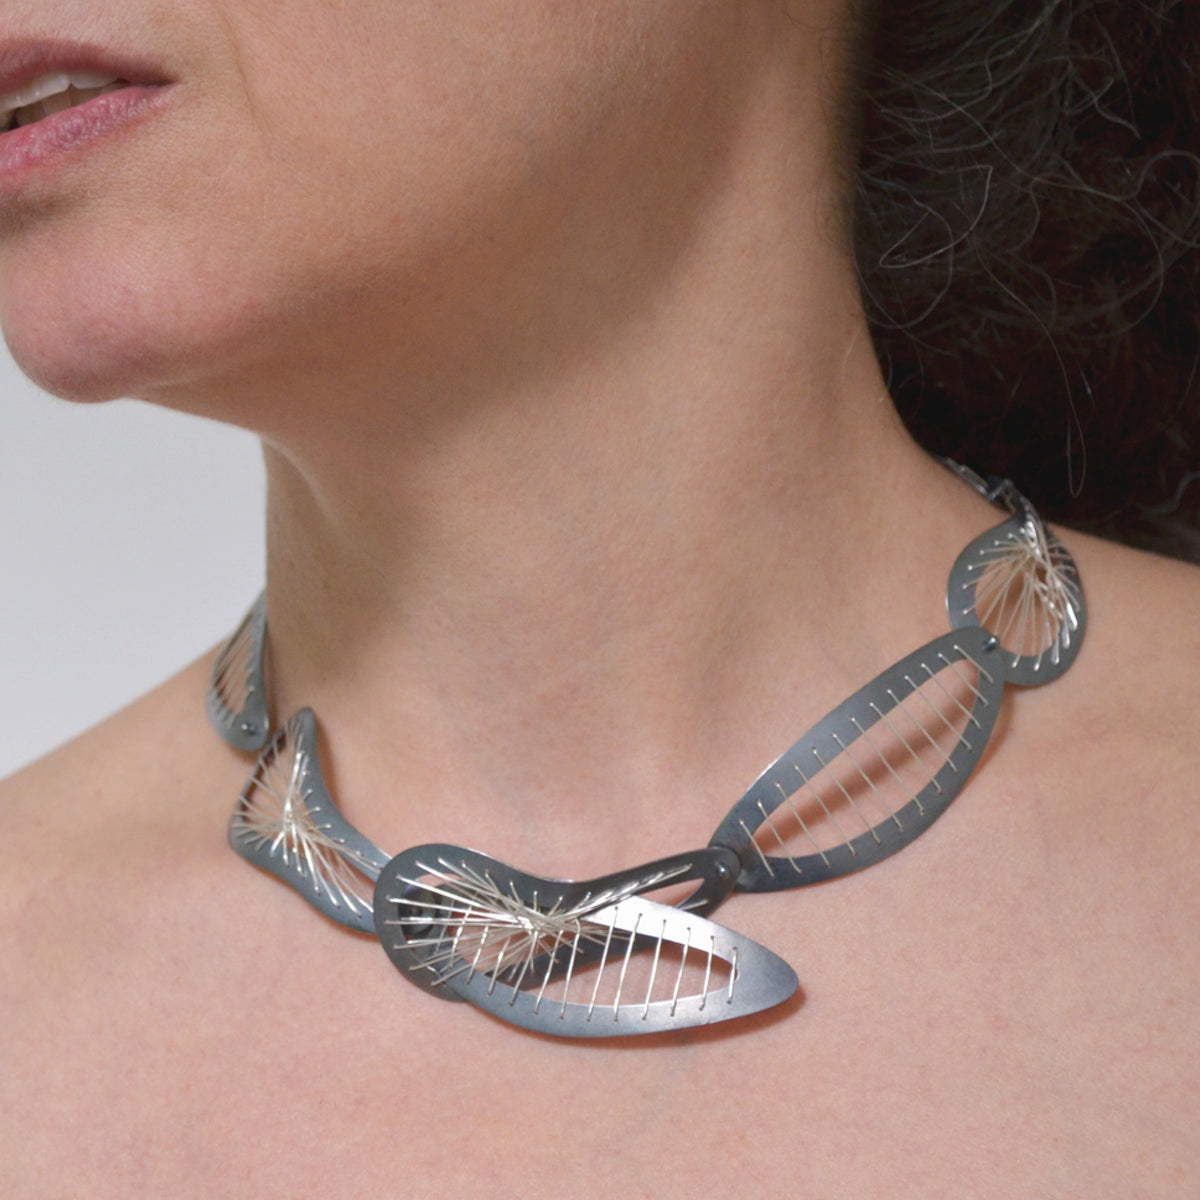 Suzanne Schwartz wearing Sew Weave Necklace